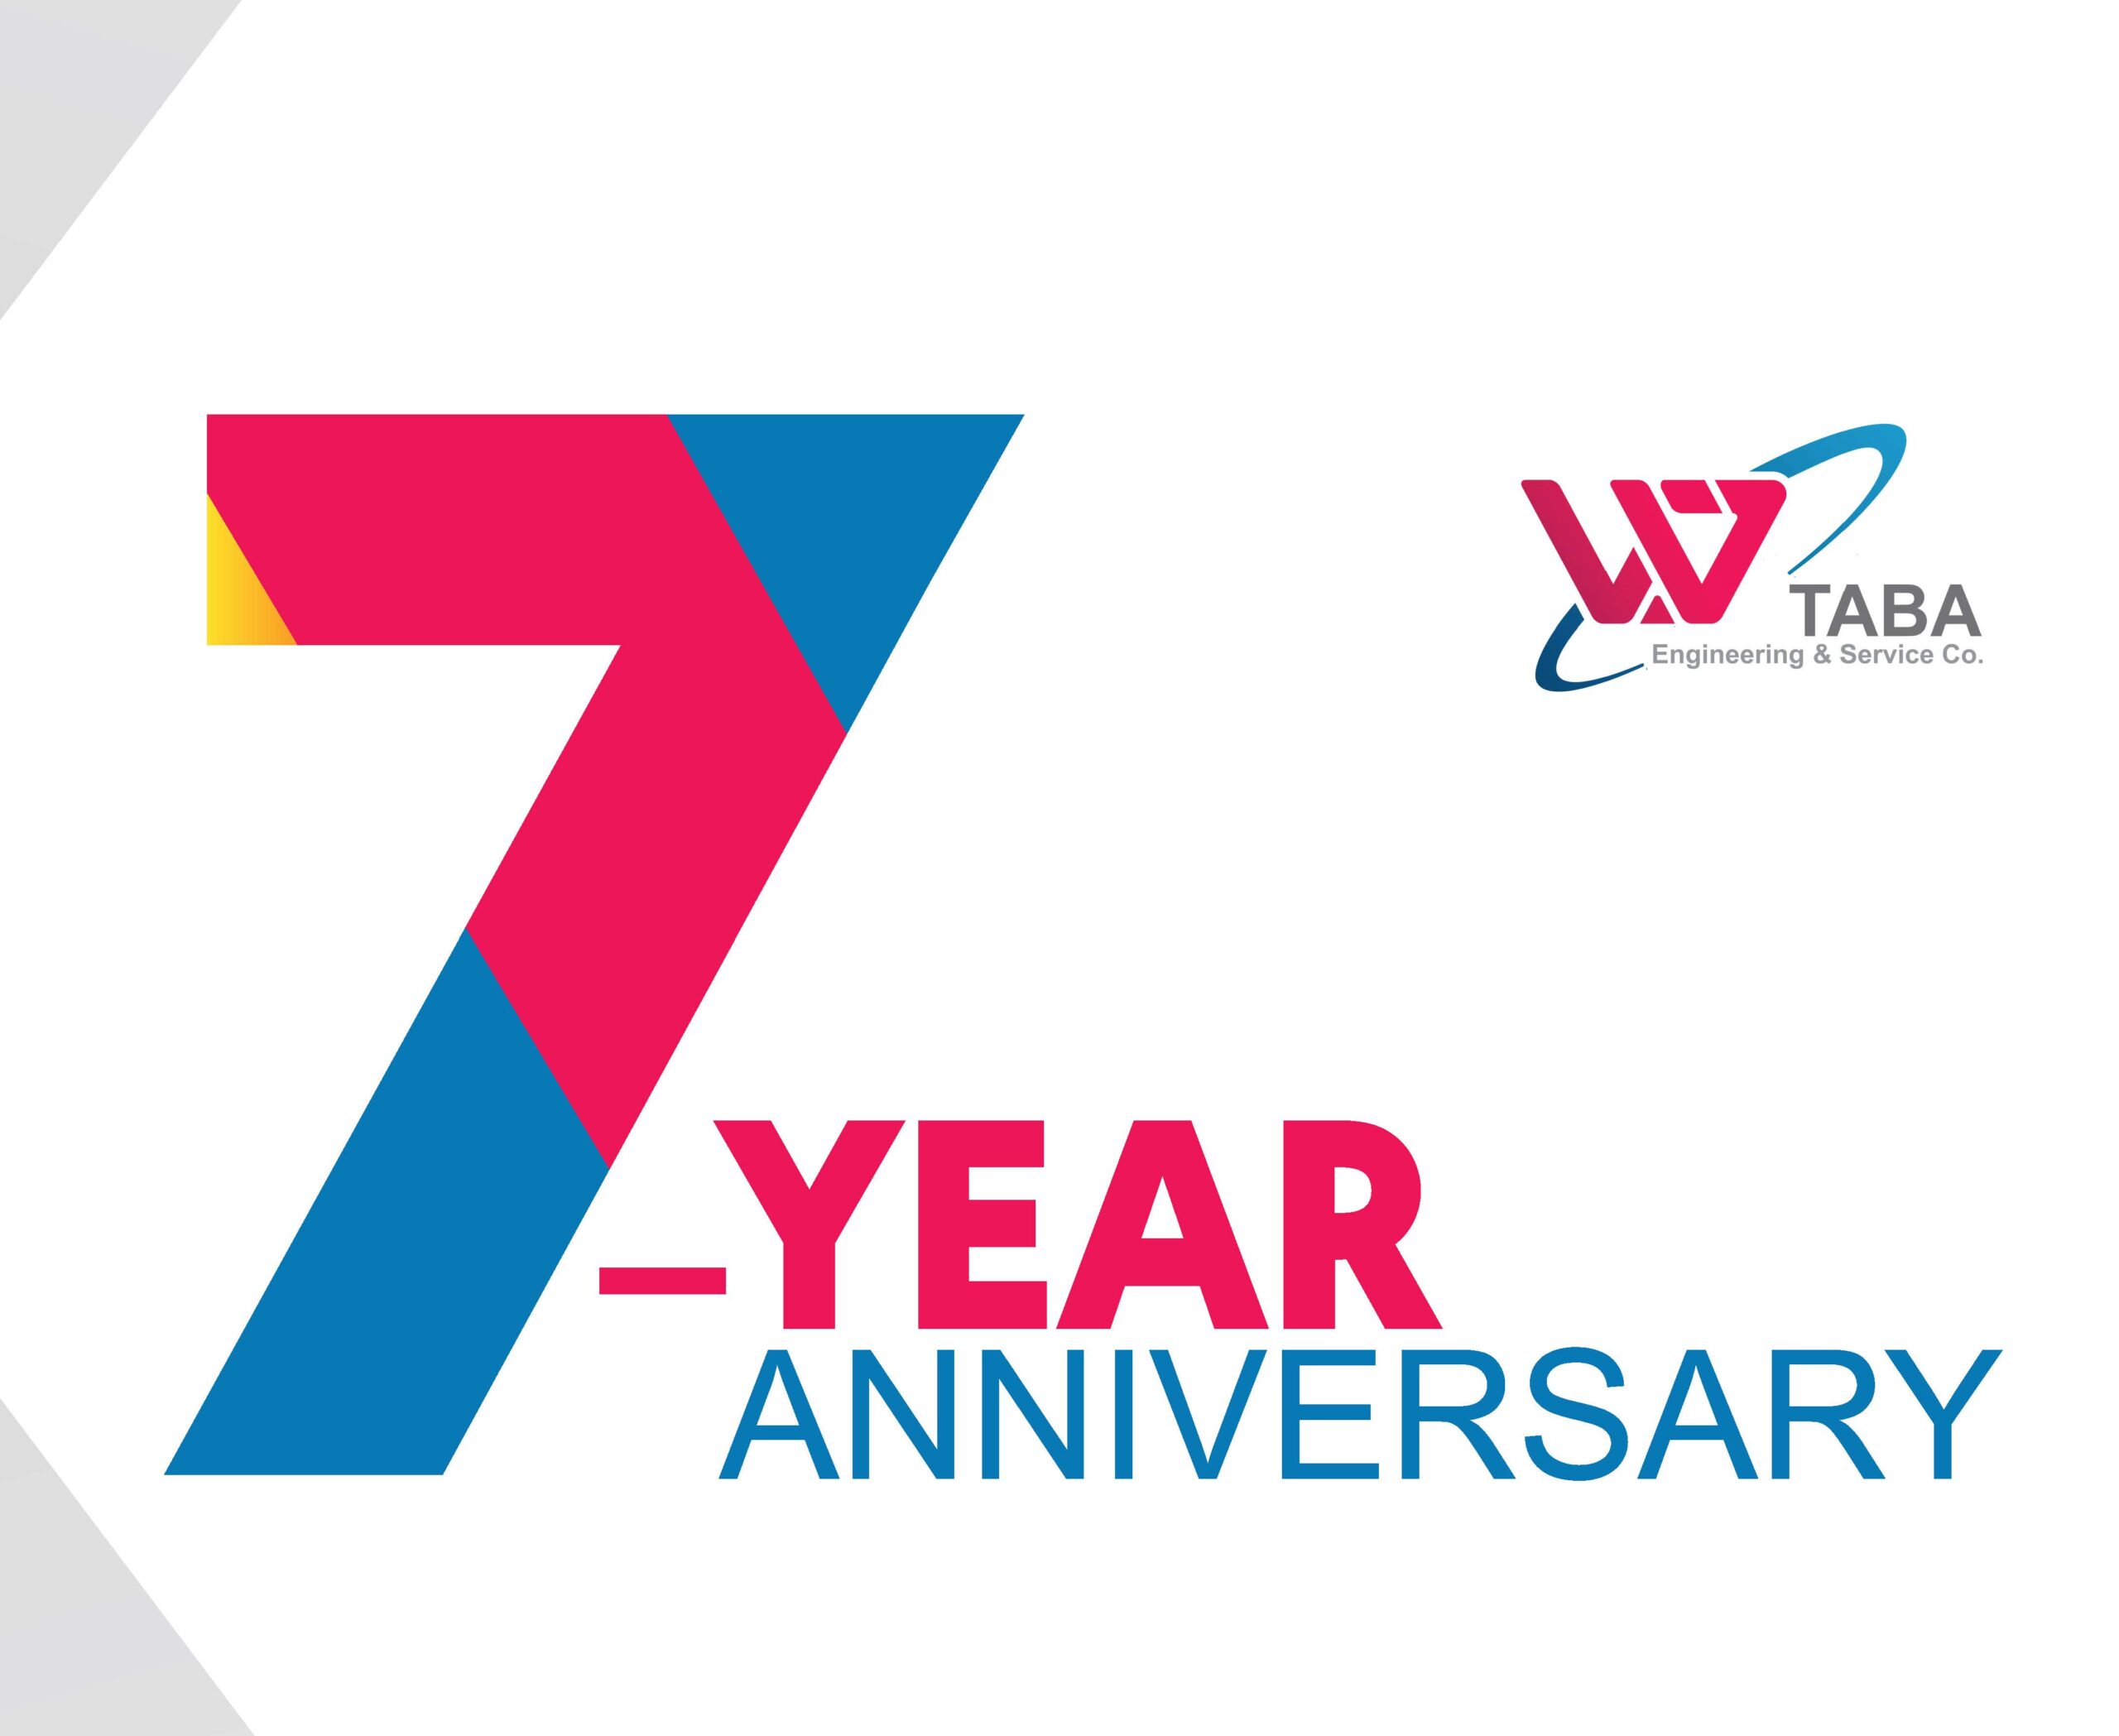 هفتمین سالگرد تاسیس شرکت تابا